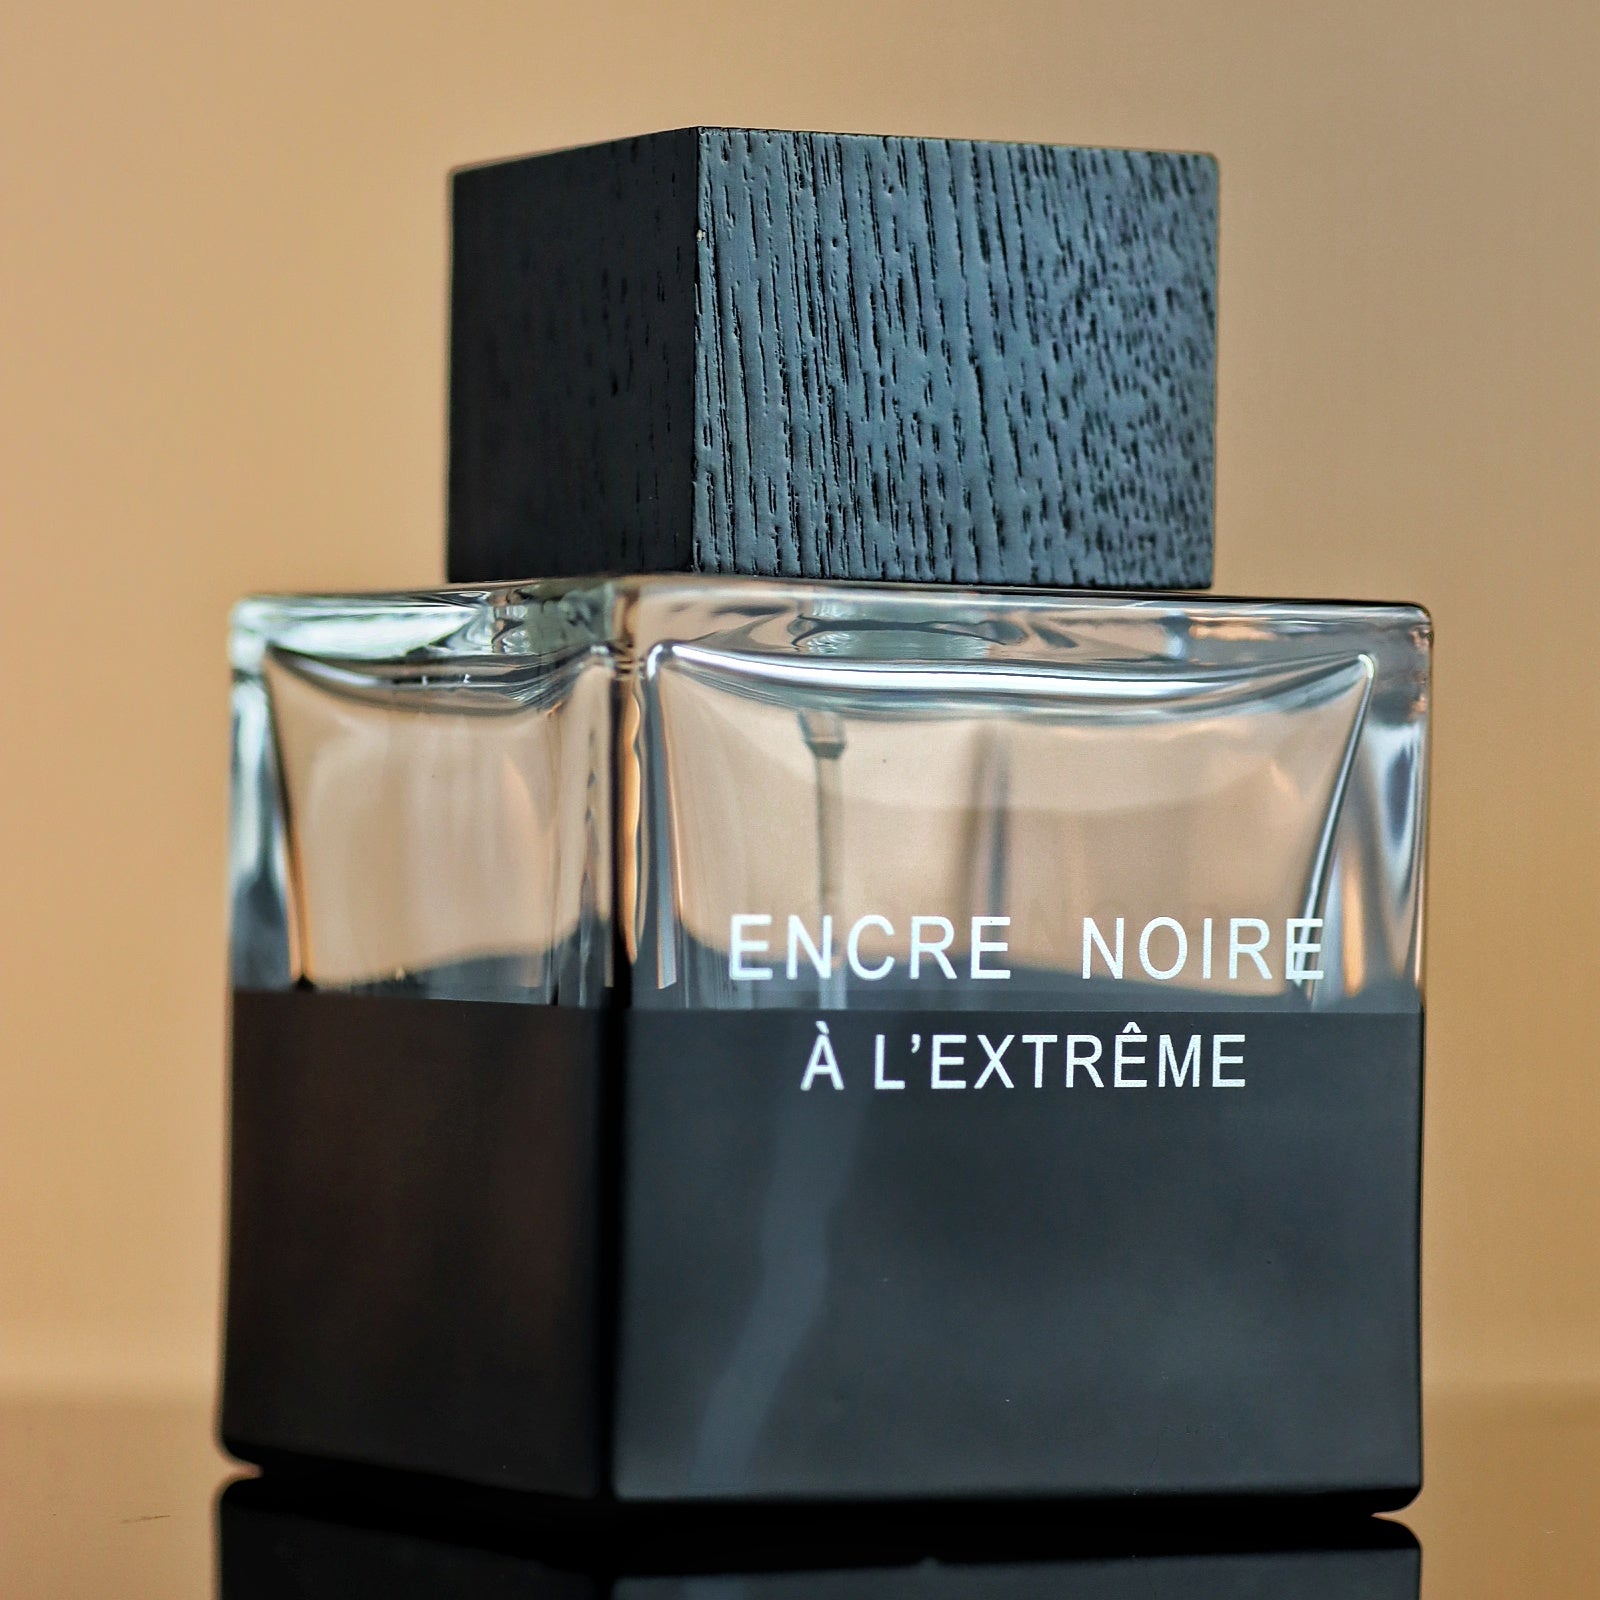 Encre Noire by Lalique Fragrance / Cologne Review 